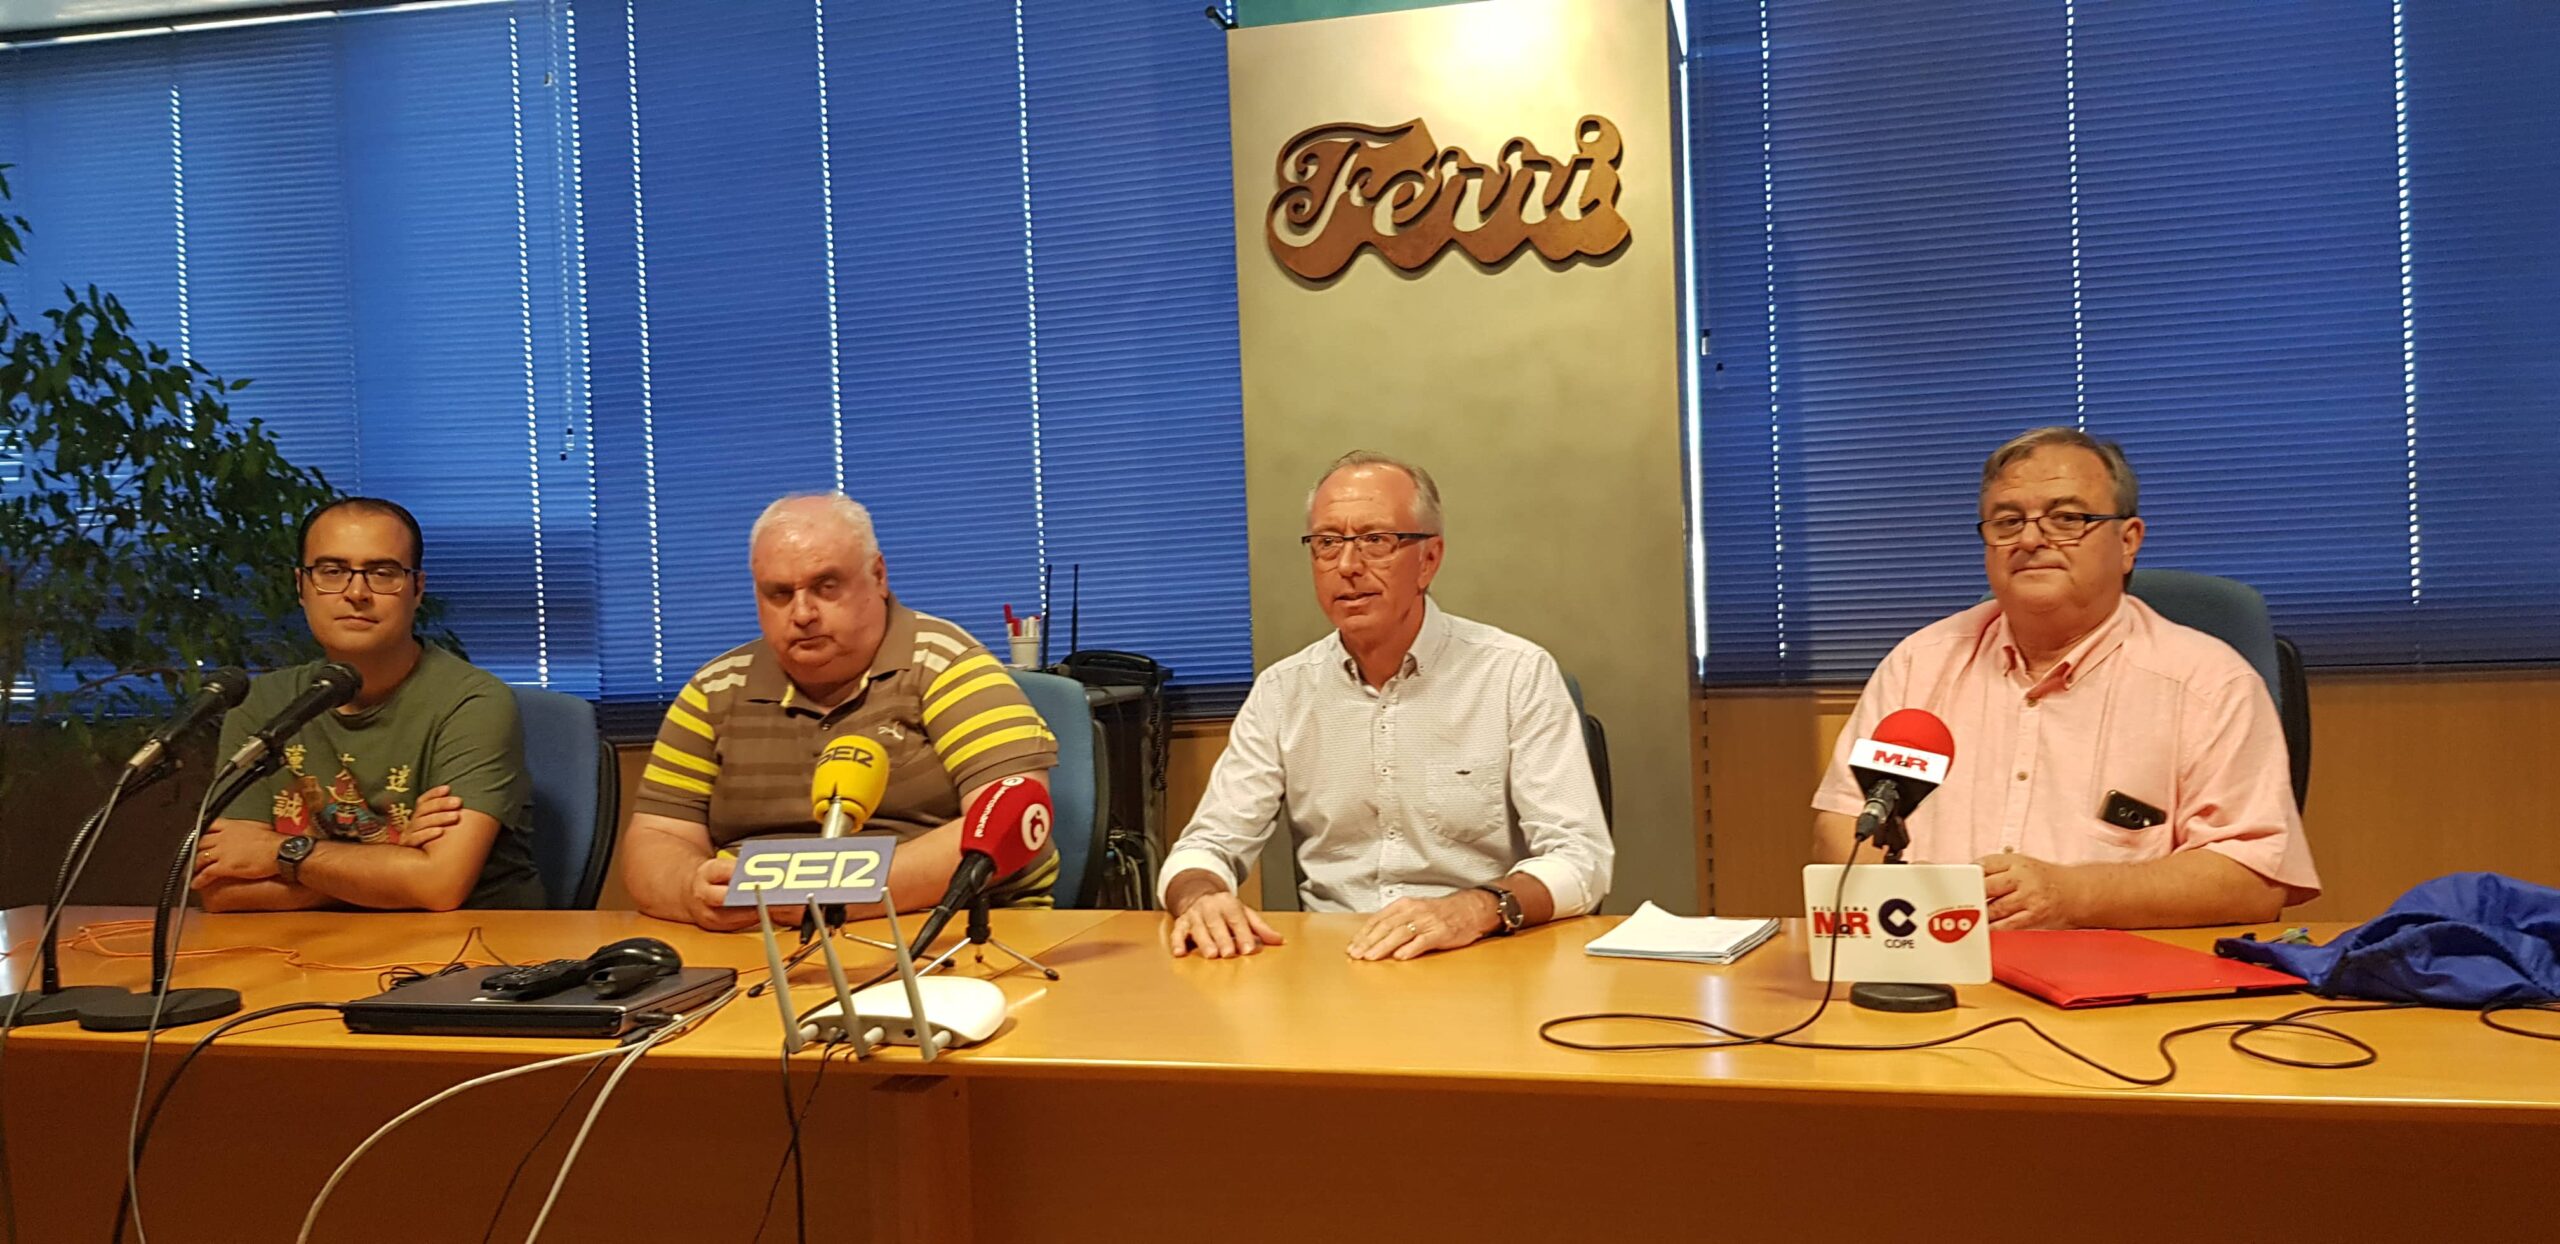 El Villena CF inicia una nueva etapa con el reto de crear una Escuela Deportiva